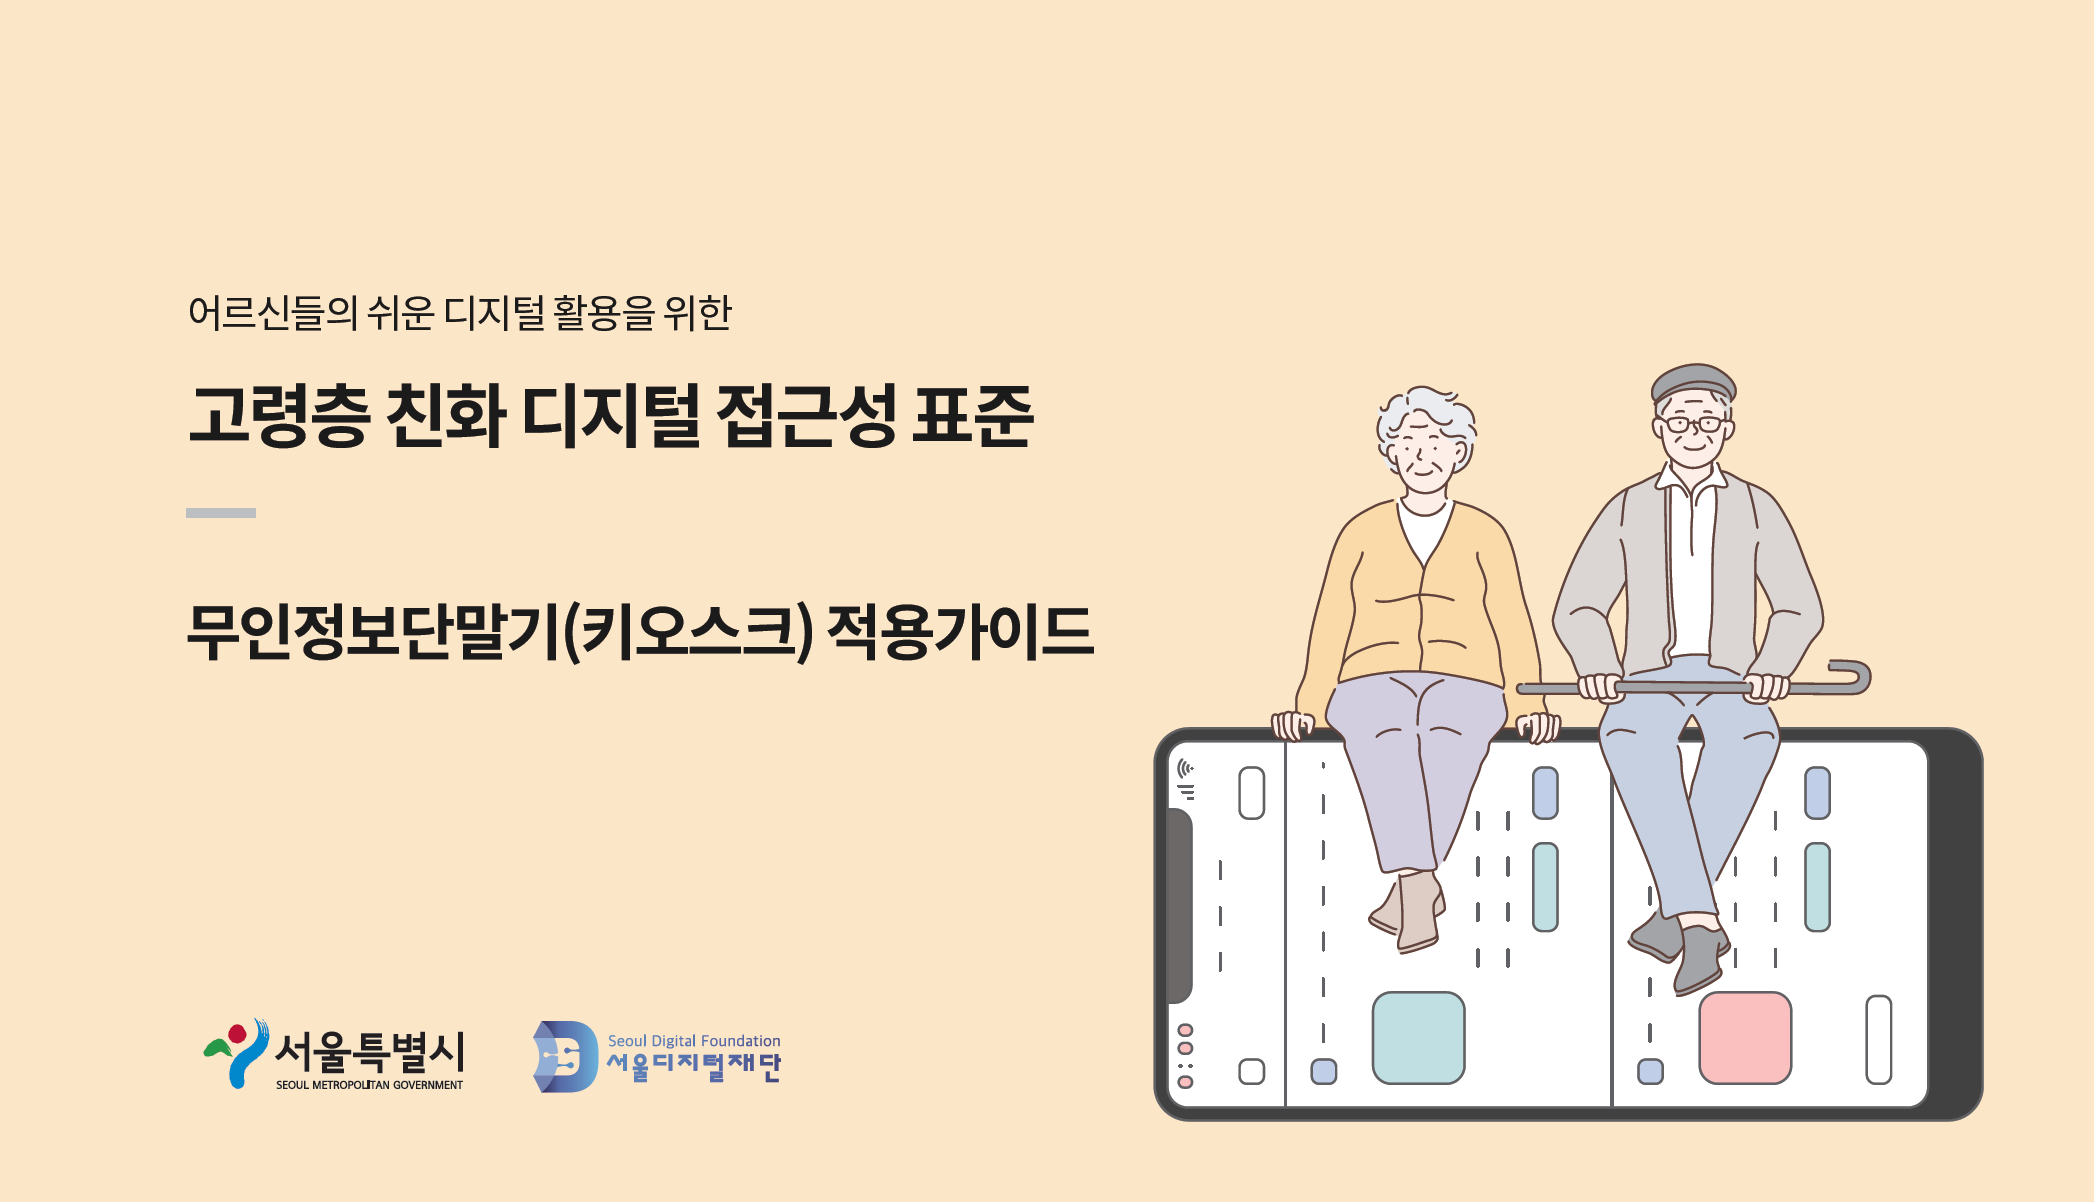 서울디지털재단, 어르신도 키오스크 사용 쉽도록 표준가이드 공개 (2022.1.28)